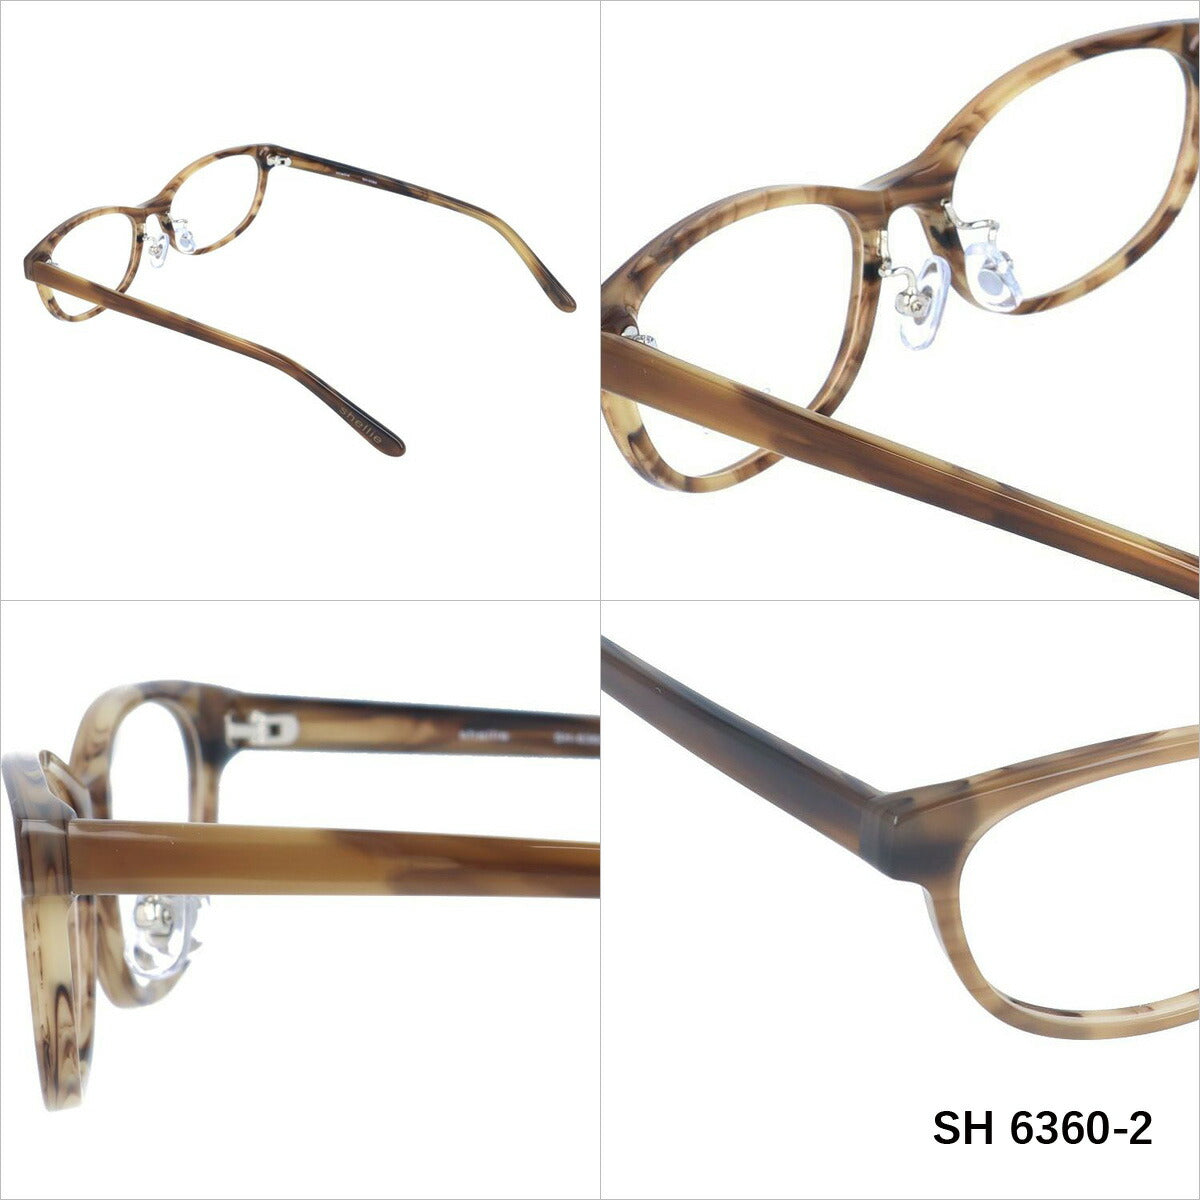 シェリー メガネ 眼鏡 フレーム 度付き 伊達 カラーレンズ メンズ レディース shellie ブランド SH 6360 52 オーバル | 老眼鏡 PCレンズ ブルーライトカット 遠近両用 対応可能 紫外線 対策 おすすめ 人気 プレゼント